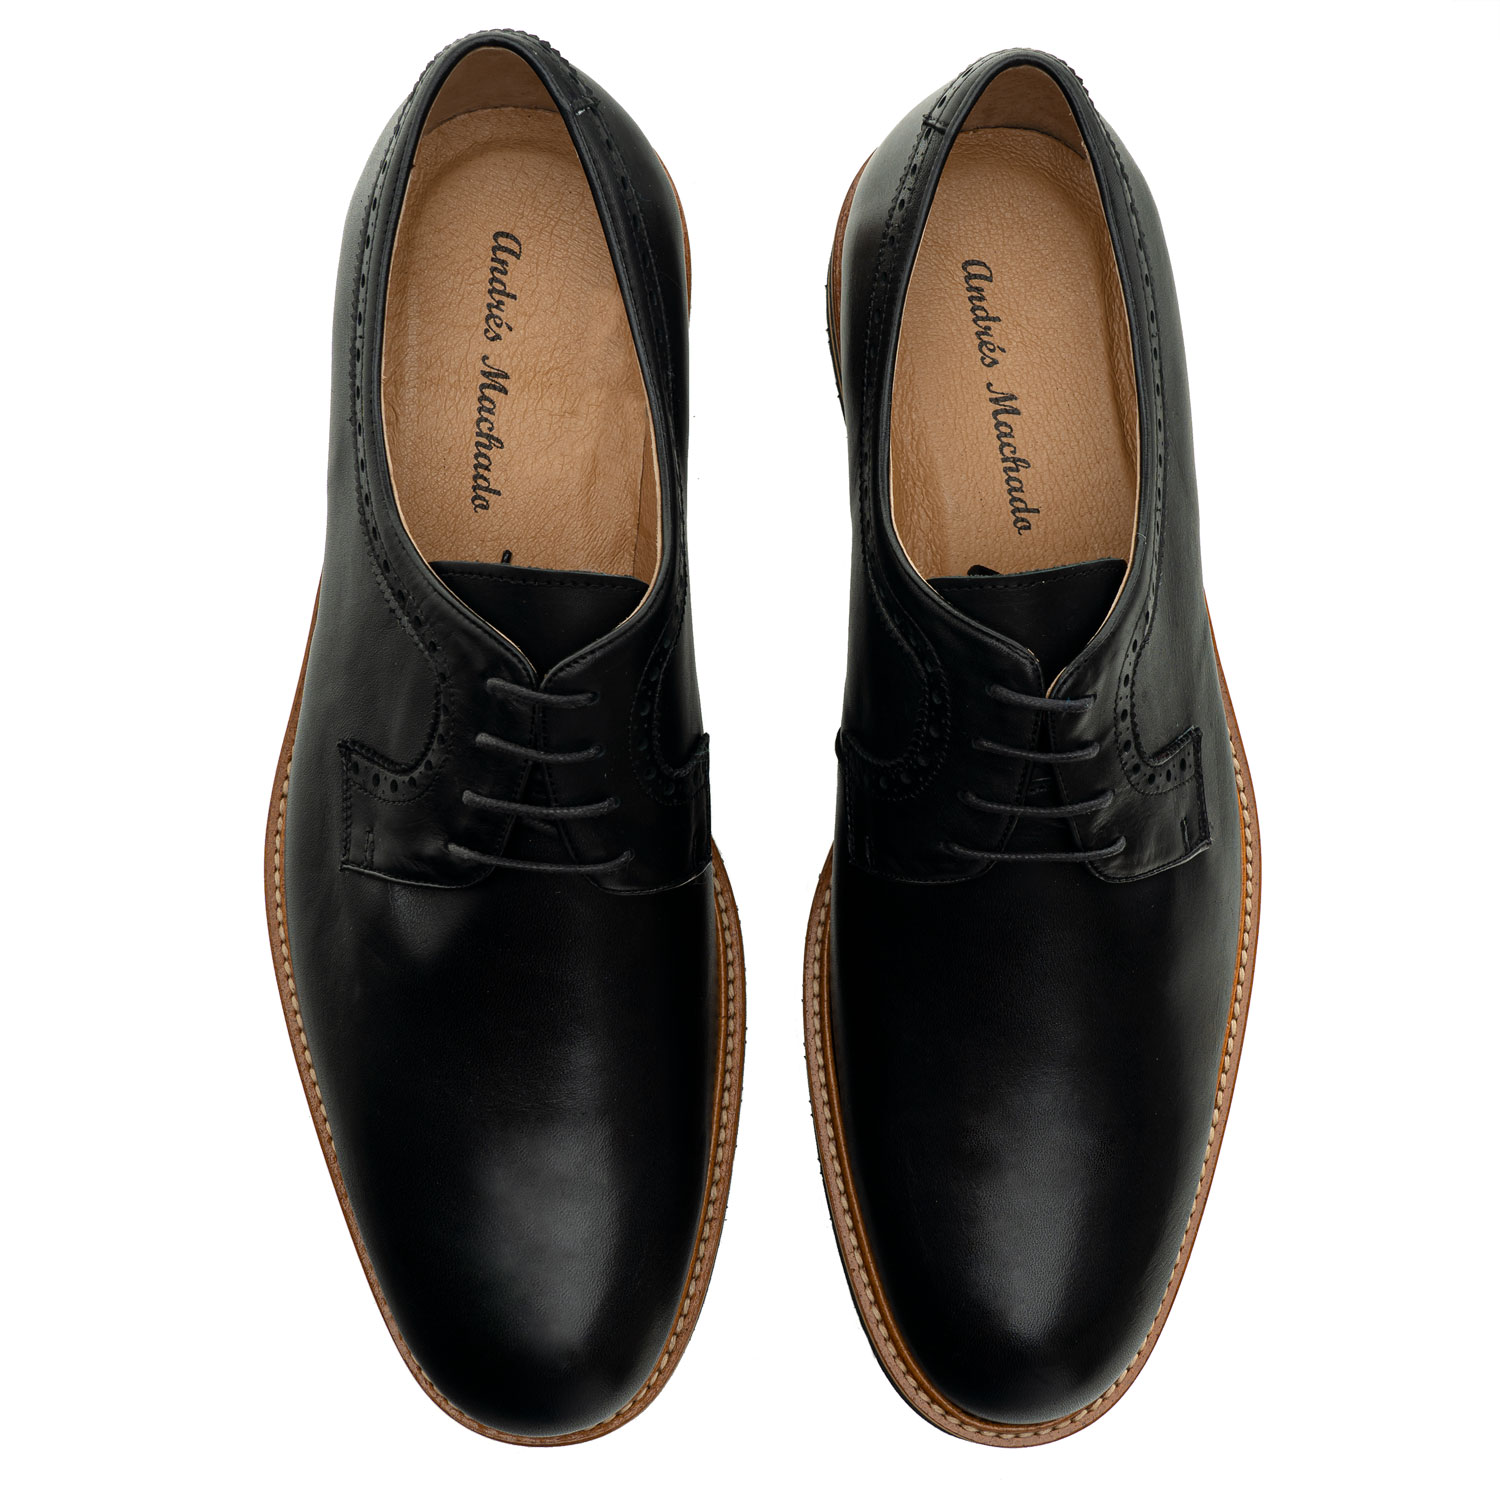 Zapato estilo Oxford en Cuero de color Negro 